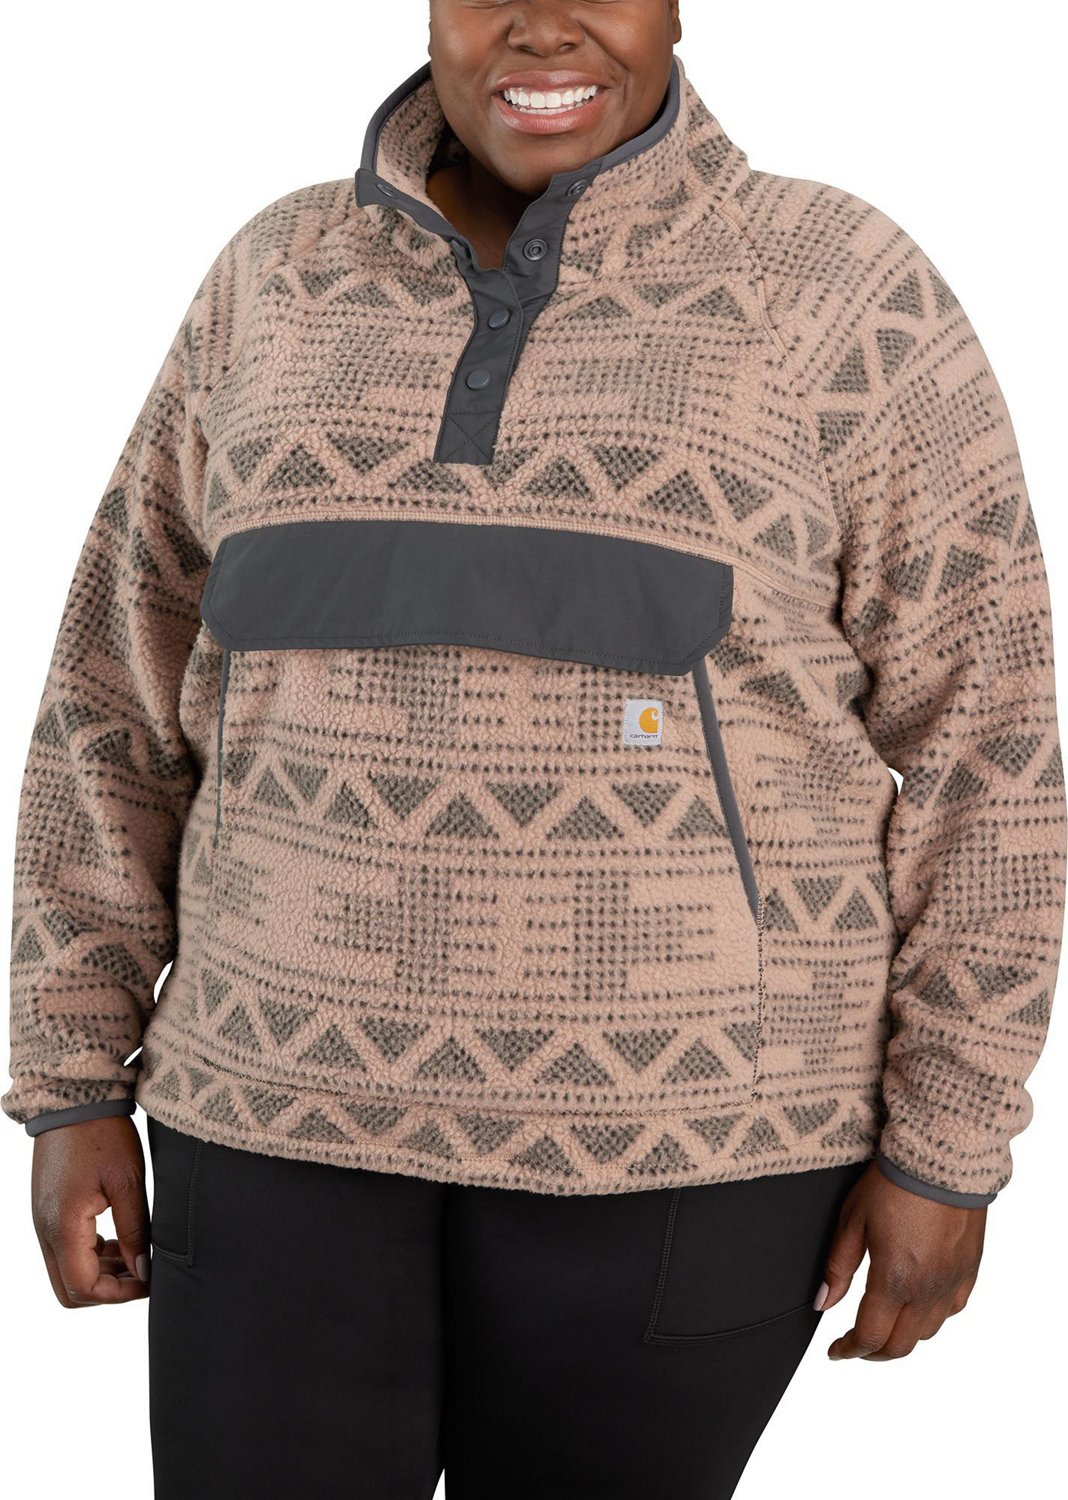 Carhartt Women's Fleece Pullover Sweatshirt                                                                                      - view number 1 selected